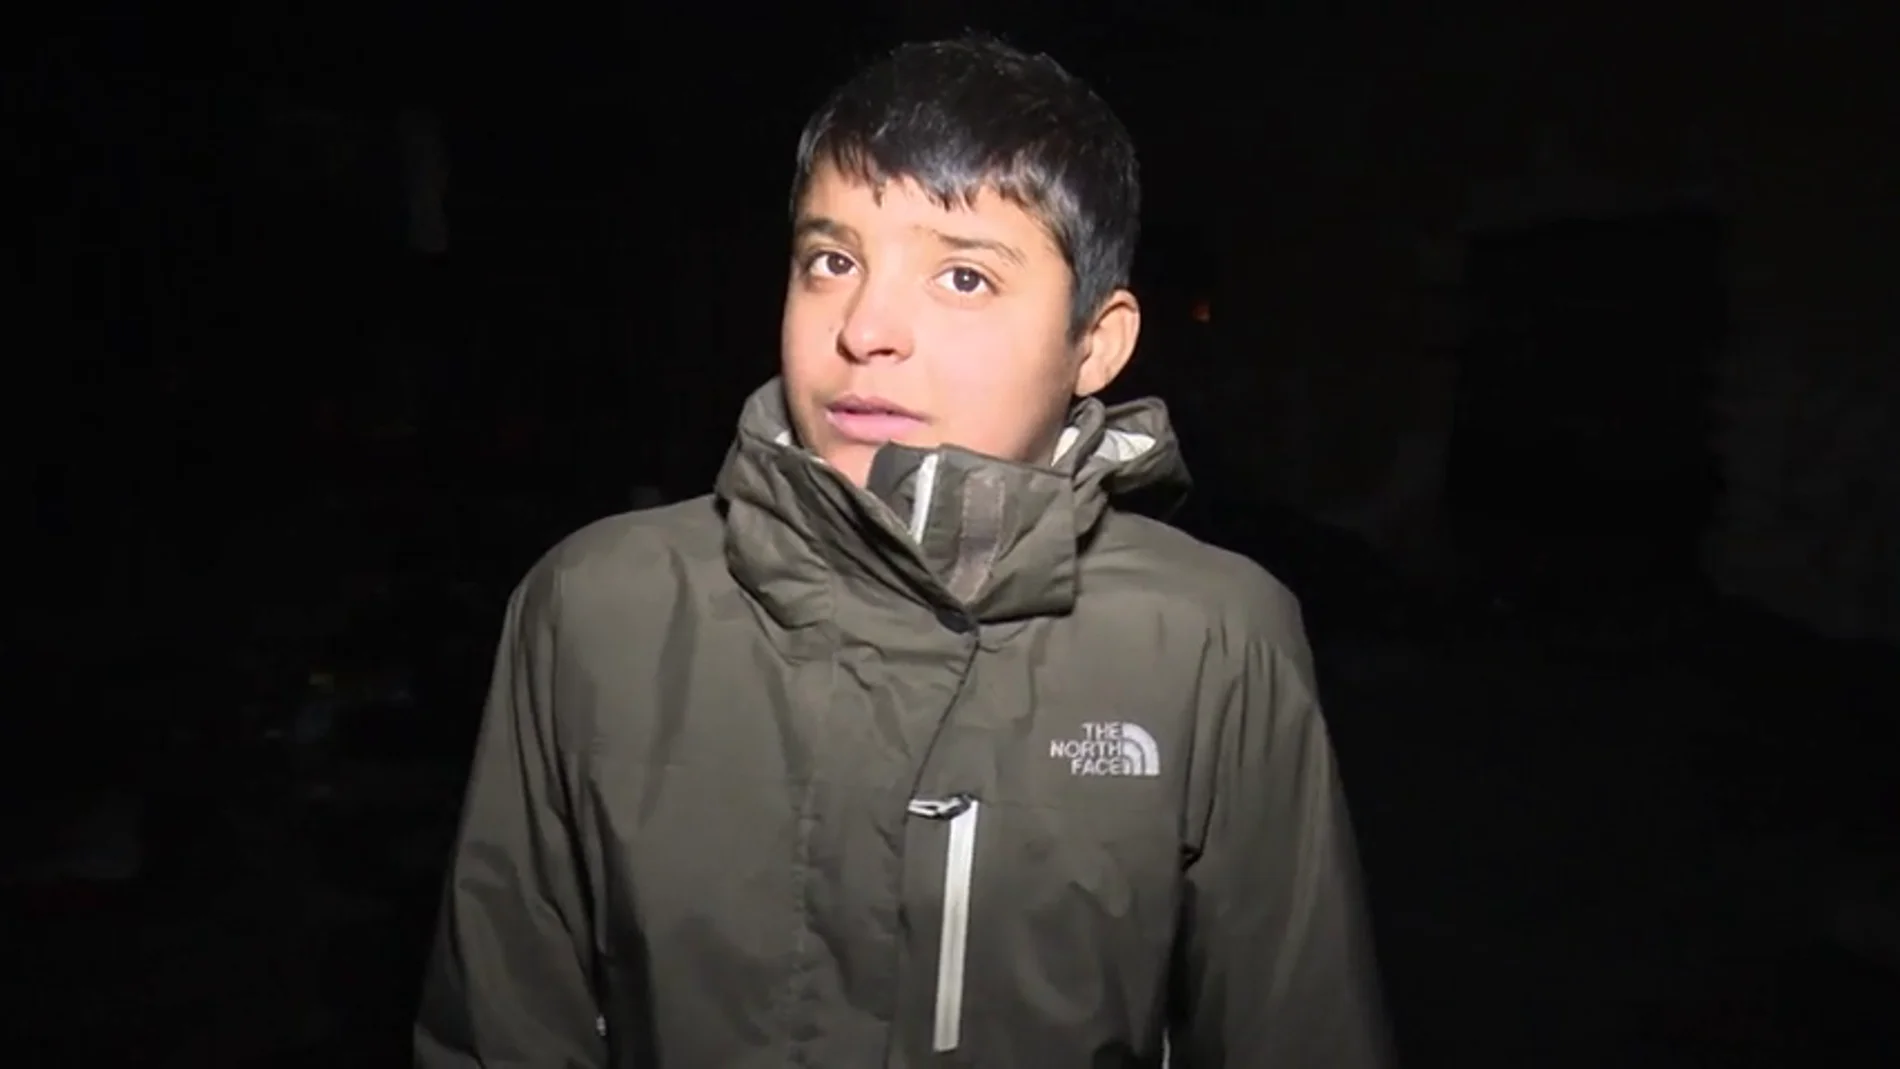 Frame 58.791724 de: Baset, un refugiado de 11 años atrapado en Belgrado: "He tenido que hacer frente a muchas dificultades"